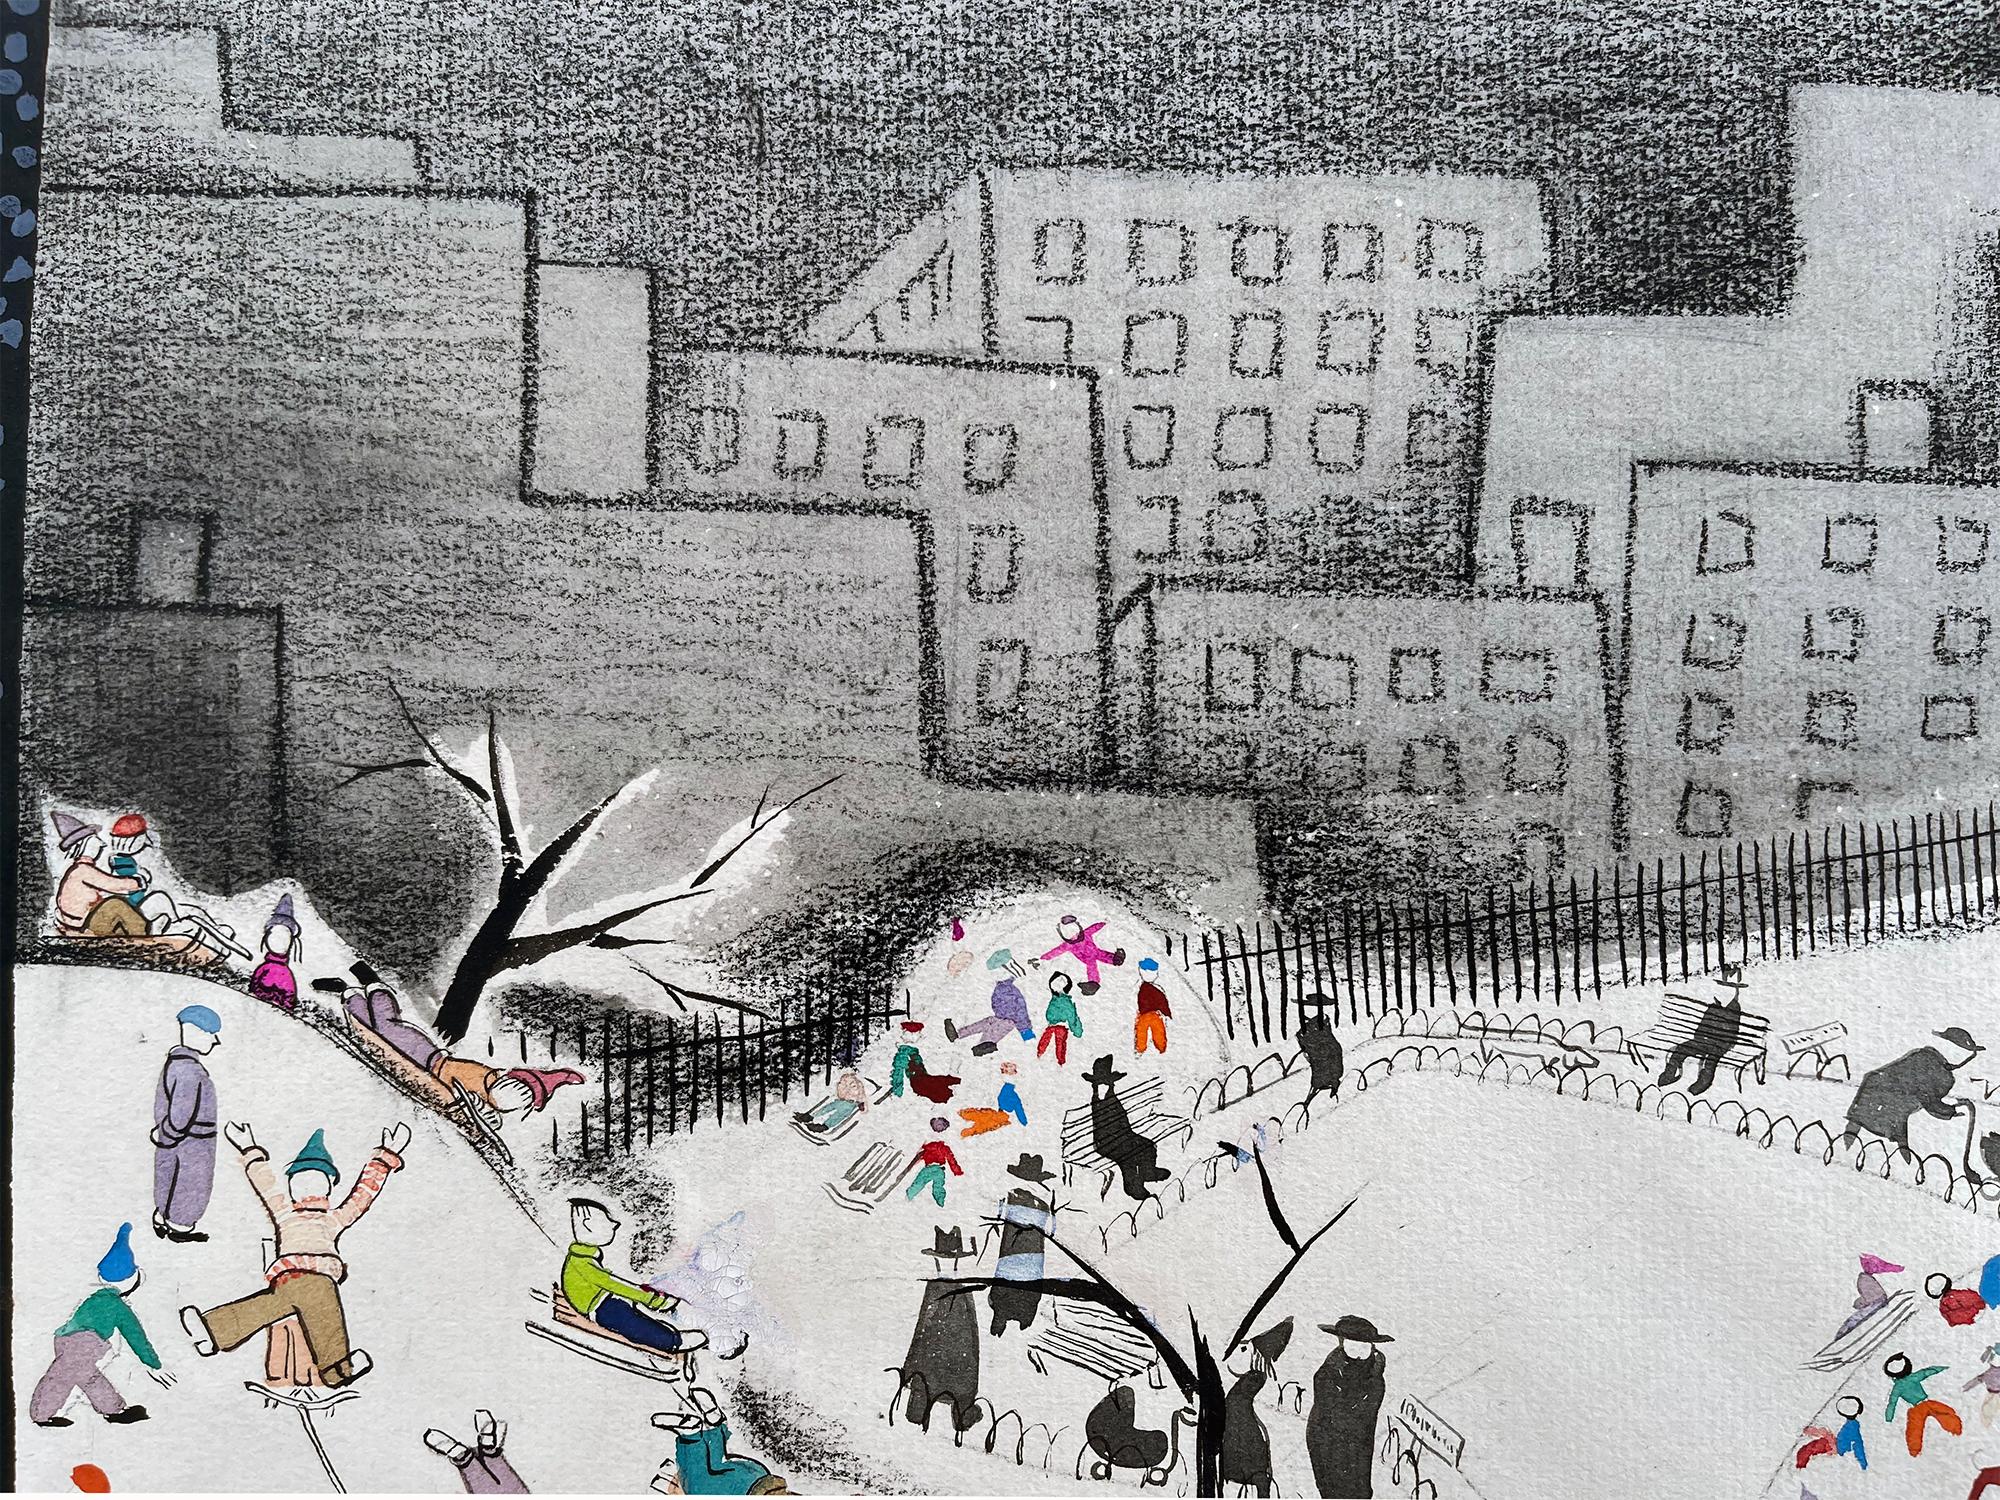 L'artiste/illustrateur hongrois/américain dépeint une charmante scène de luge dans la neige à Central Park. L'œuvre est abstraite dans sa conception comme elle est fonctionnelle dans sa narration - Couverture inédite du New Yorker - Non signé, Mat